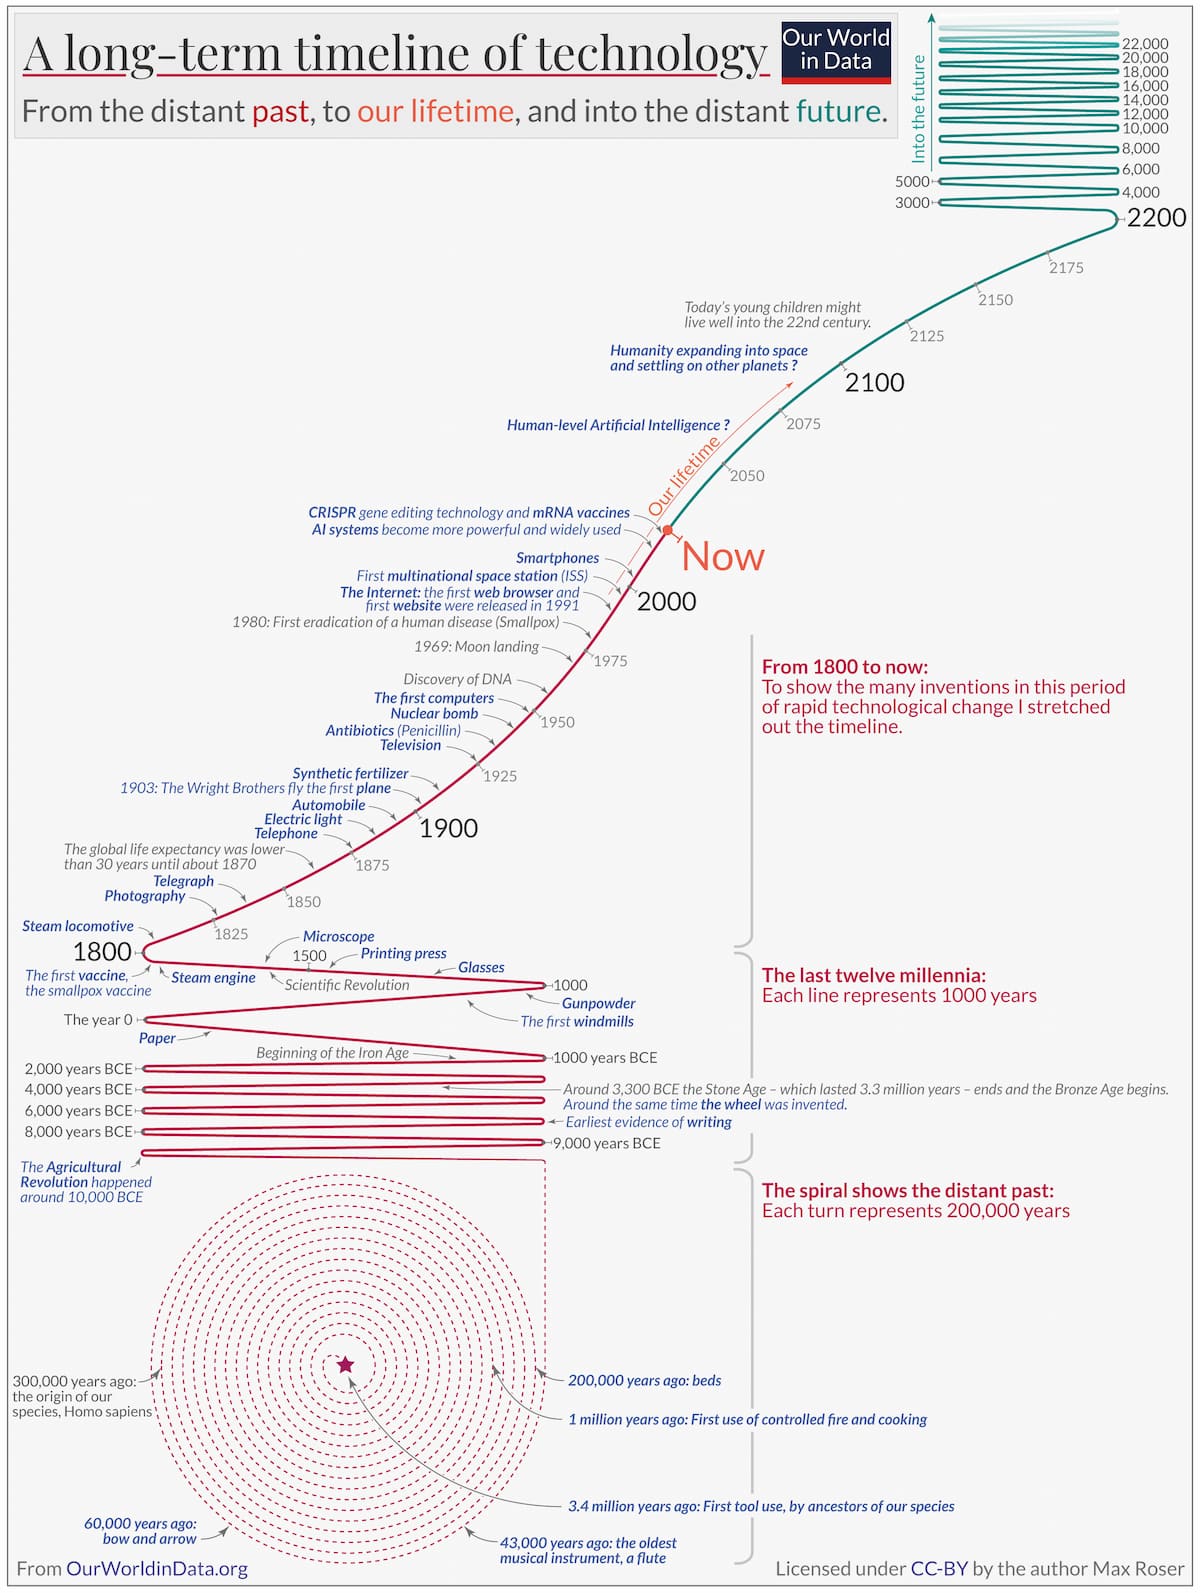 La historia de la tecnología a largo plazo (CC)-By Max Roser - Our World in Data